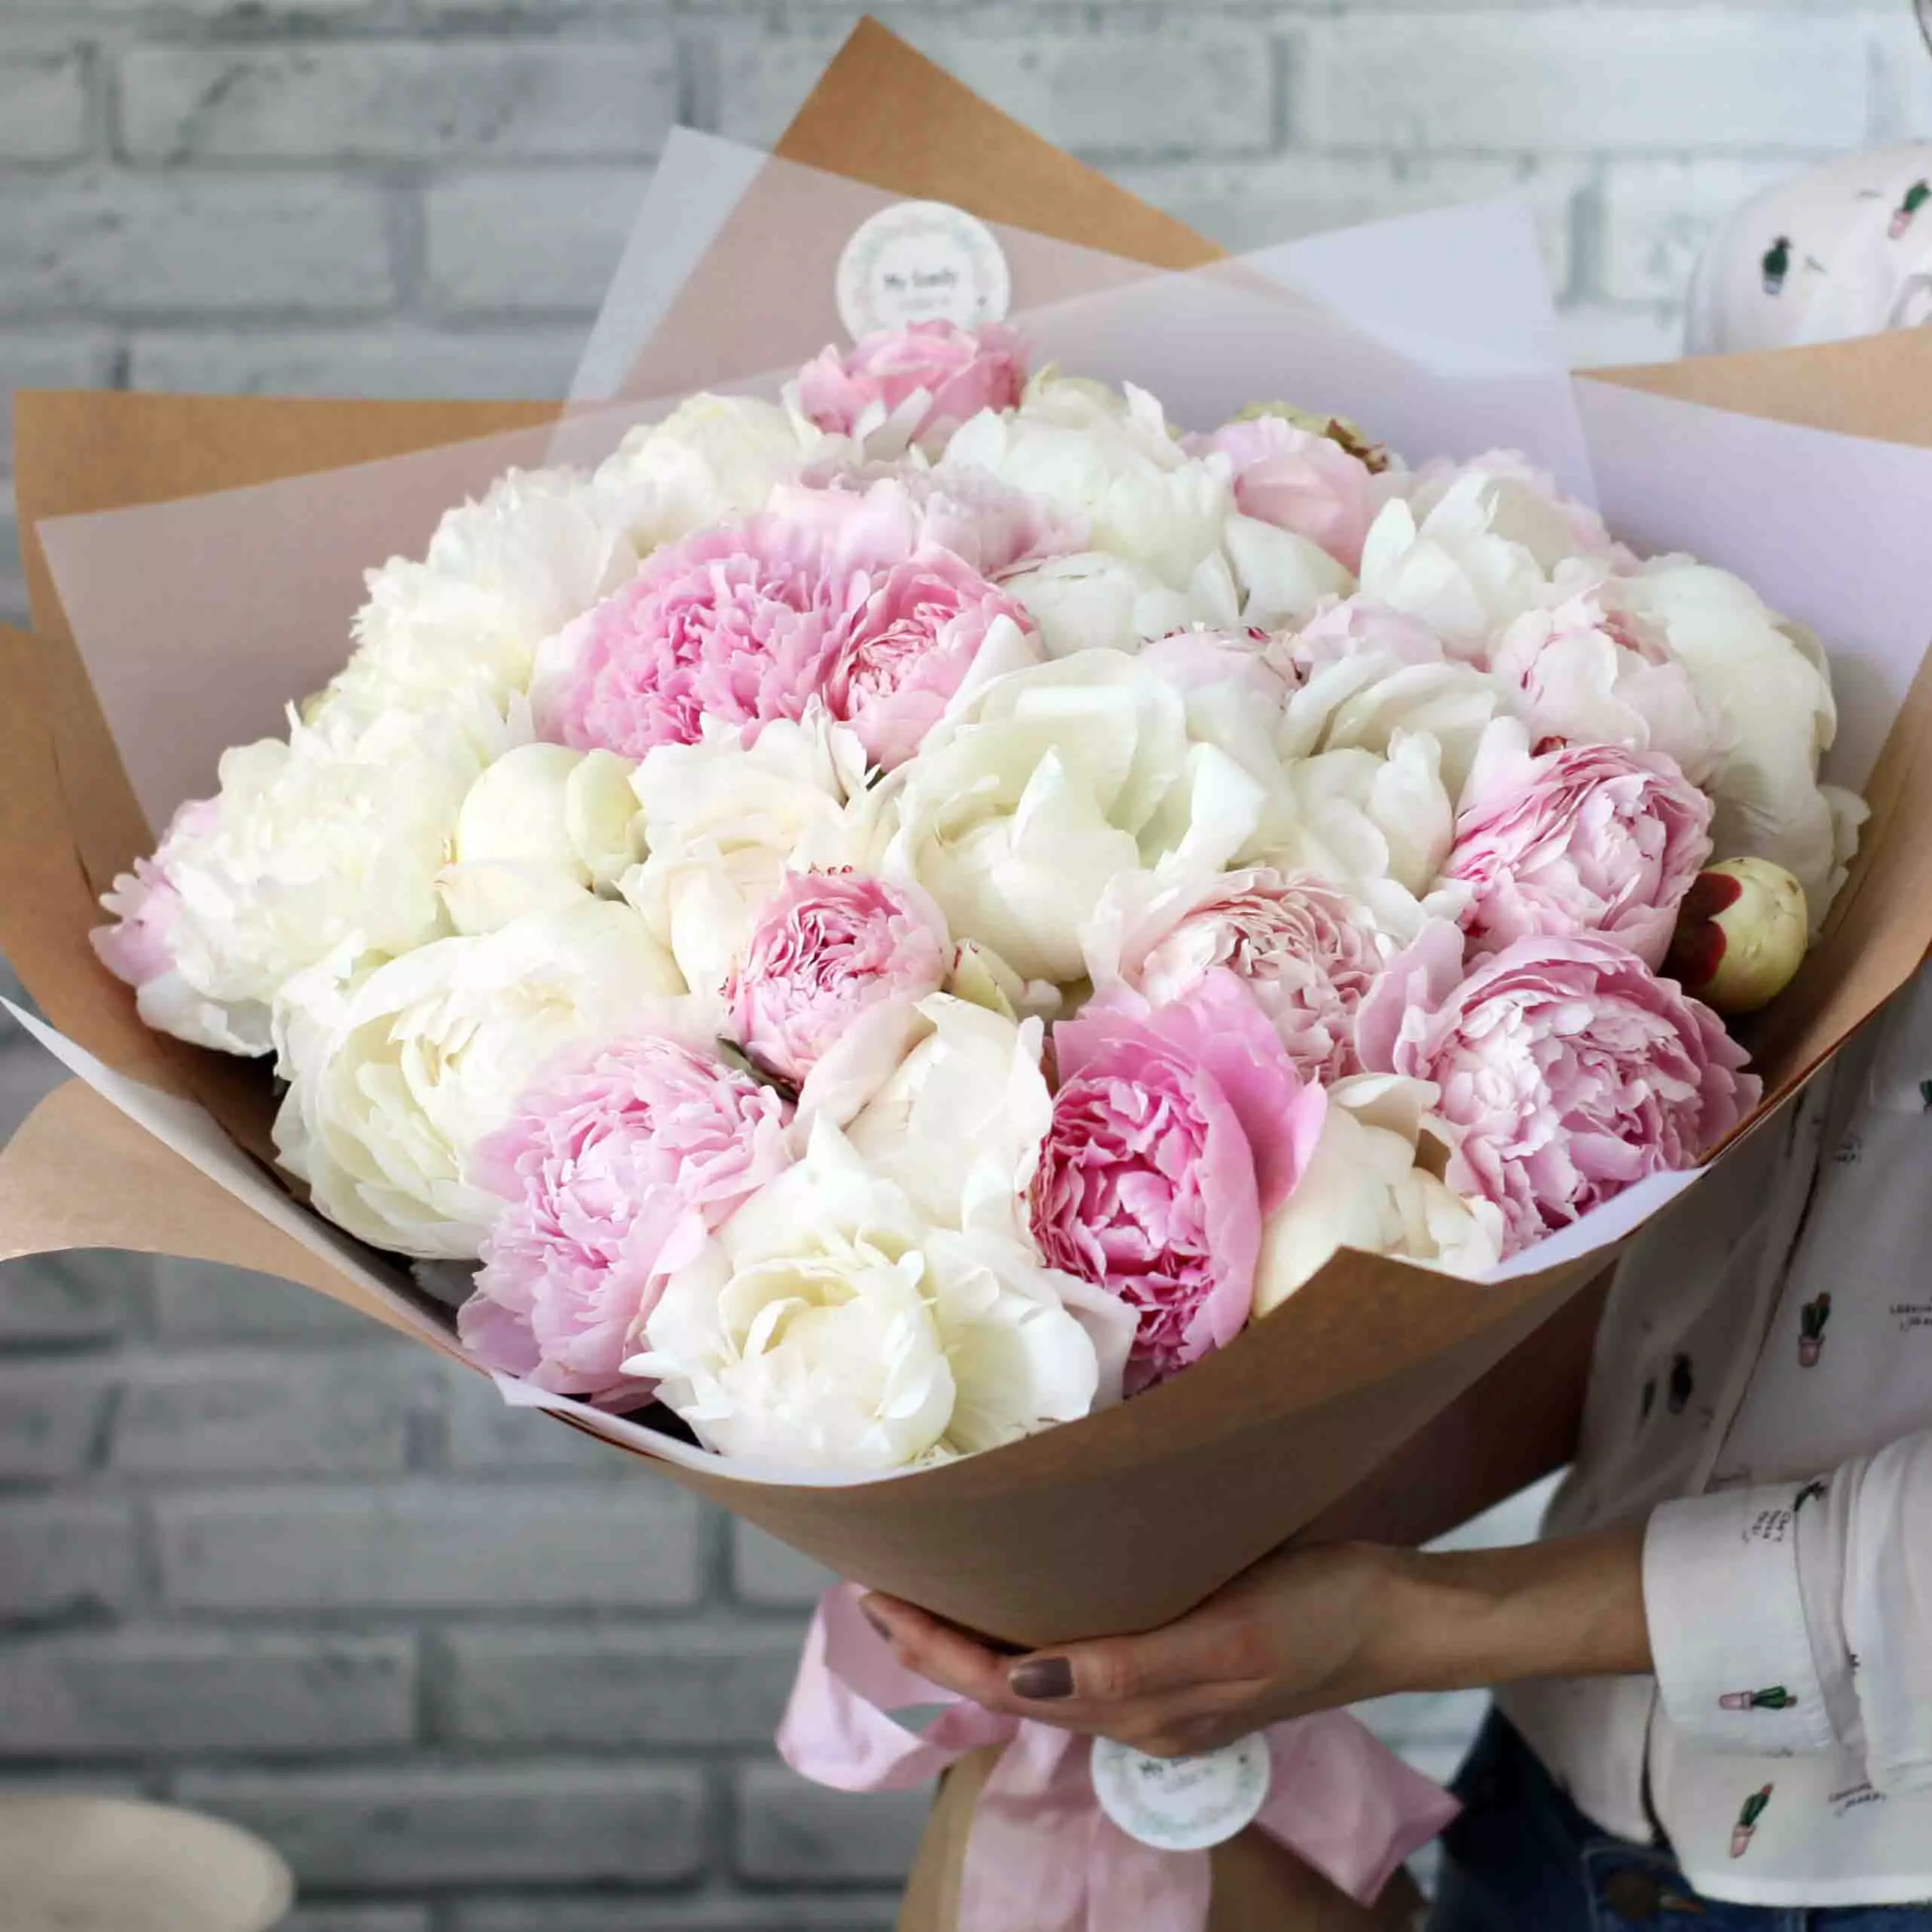 给女孩带什么花？ 34照片你可以给多少玫瑰？什么是更好的 - 室内花在锅里或漂亮的花束？ 18667_9